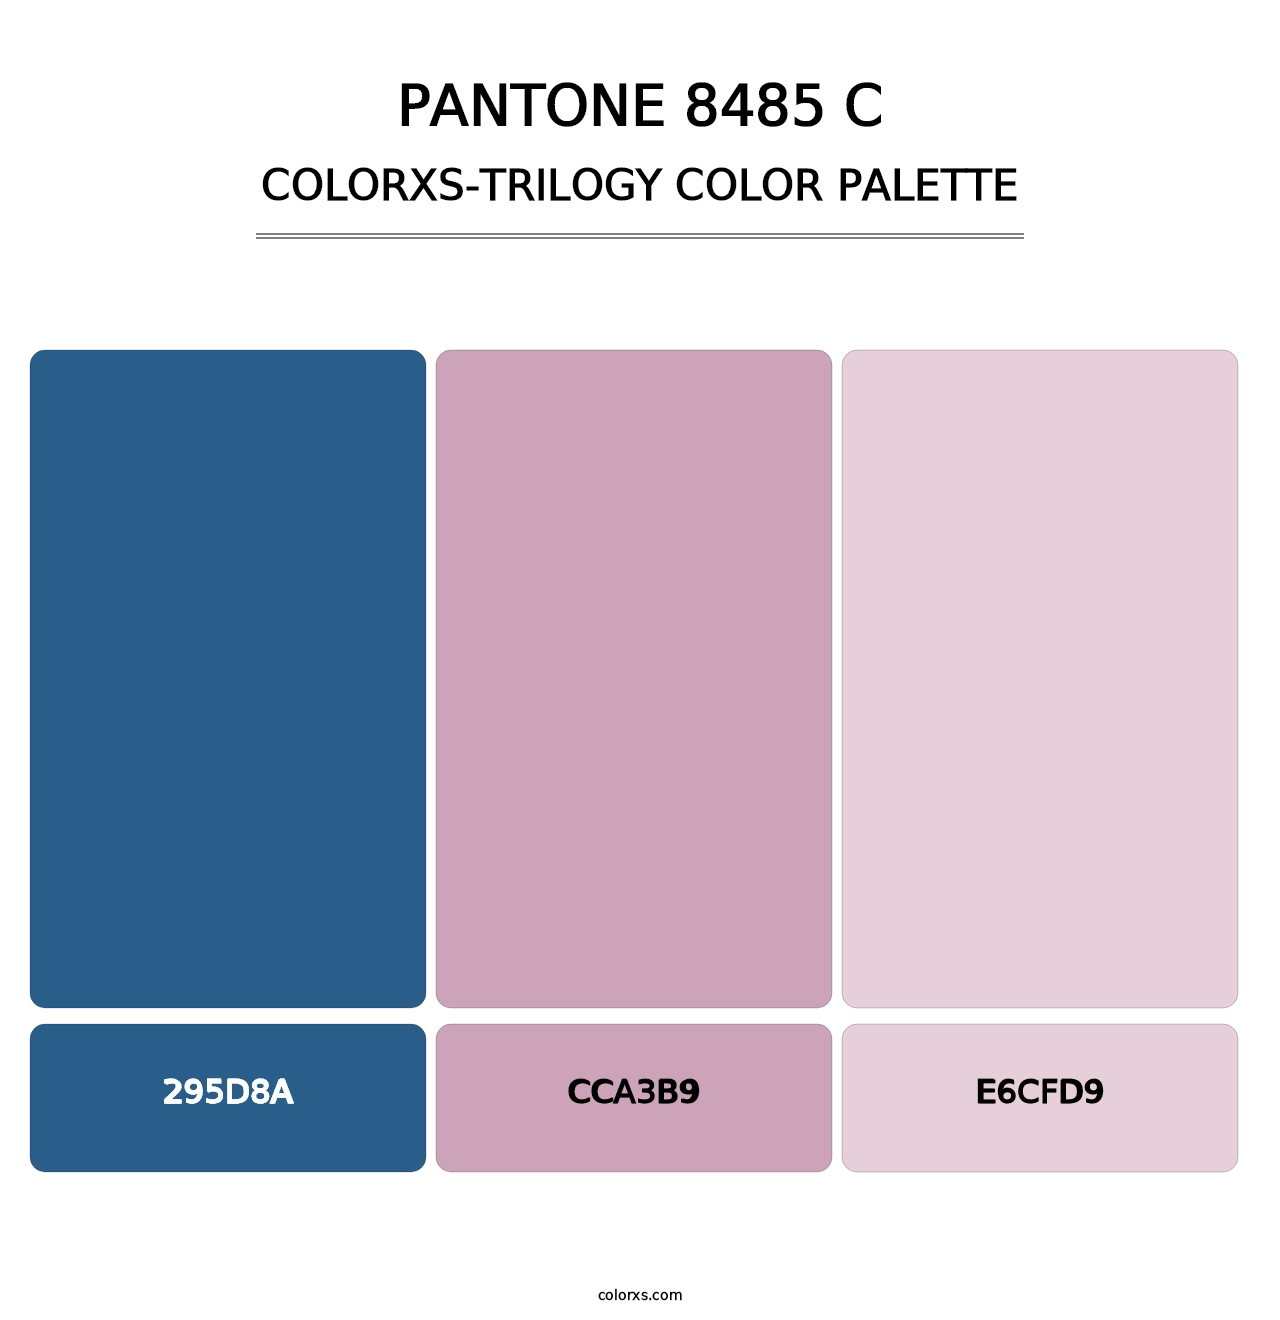 PANTONE 8485 C - Colorxs Trilogy Palette